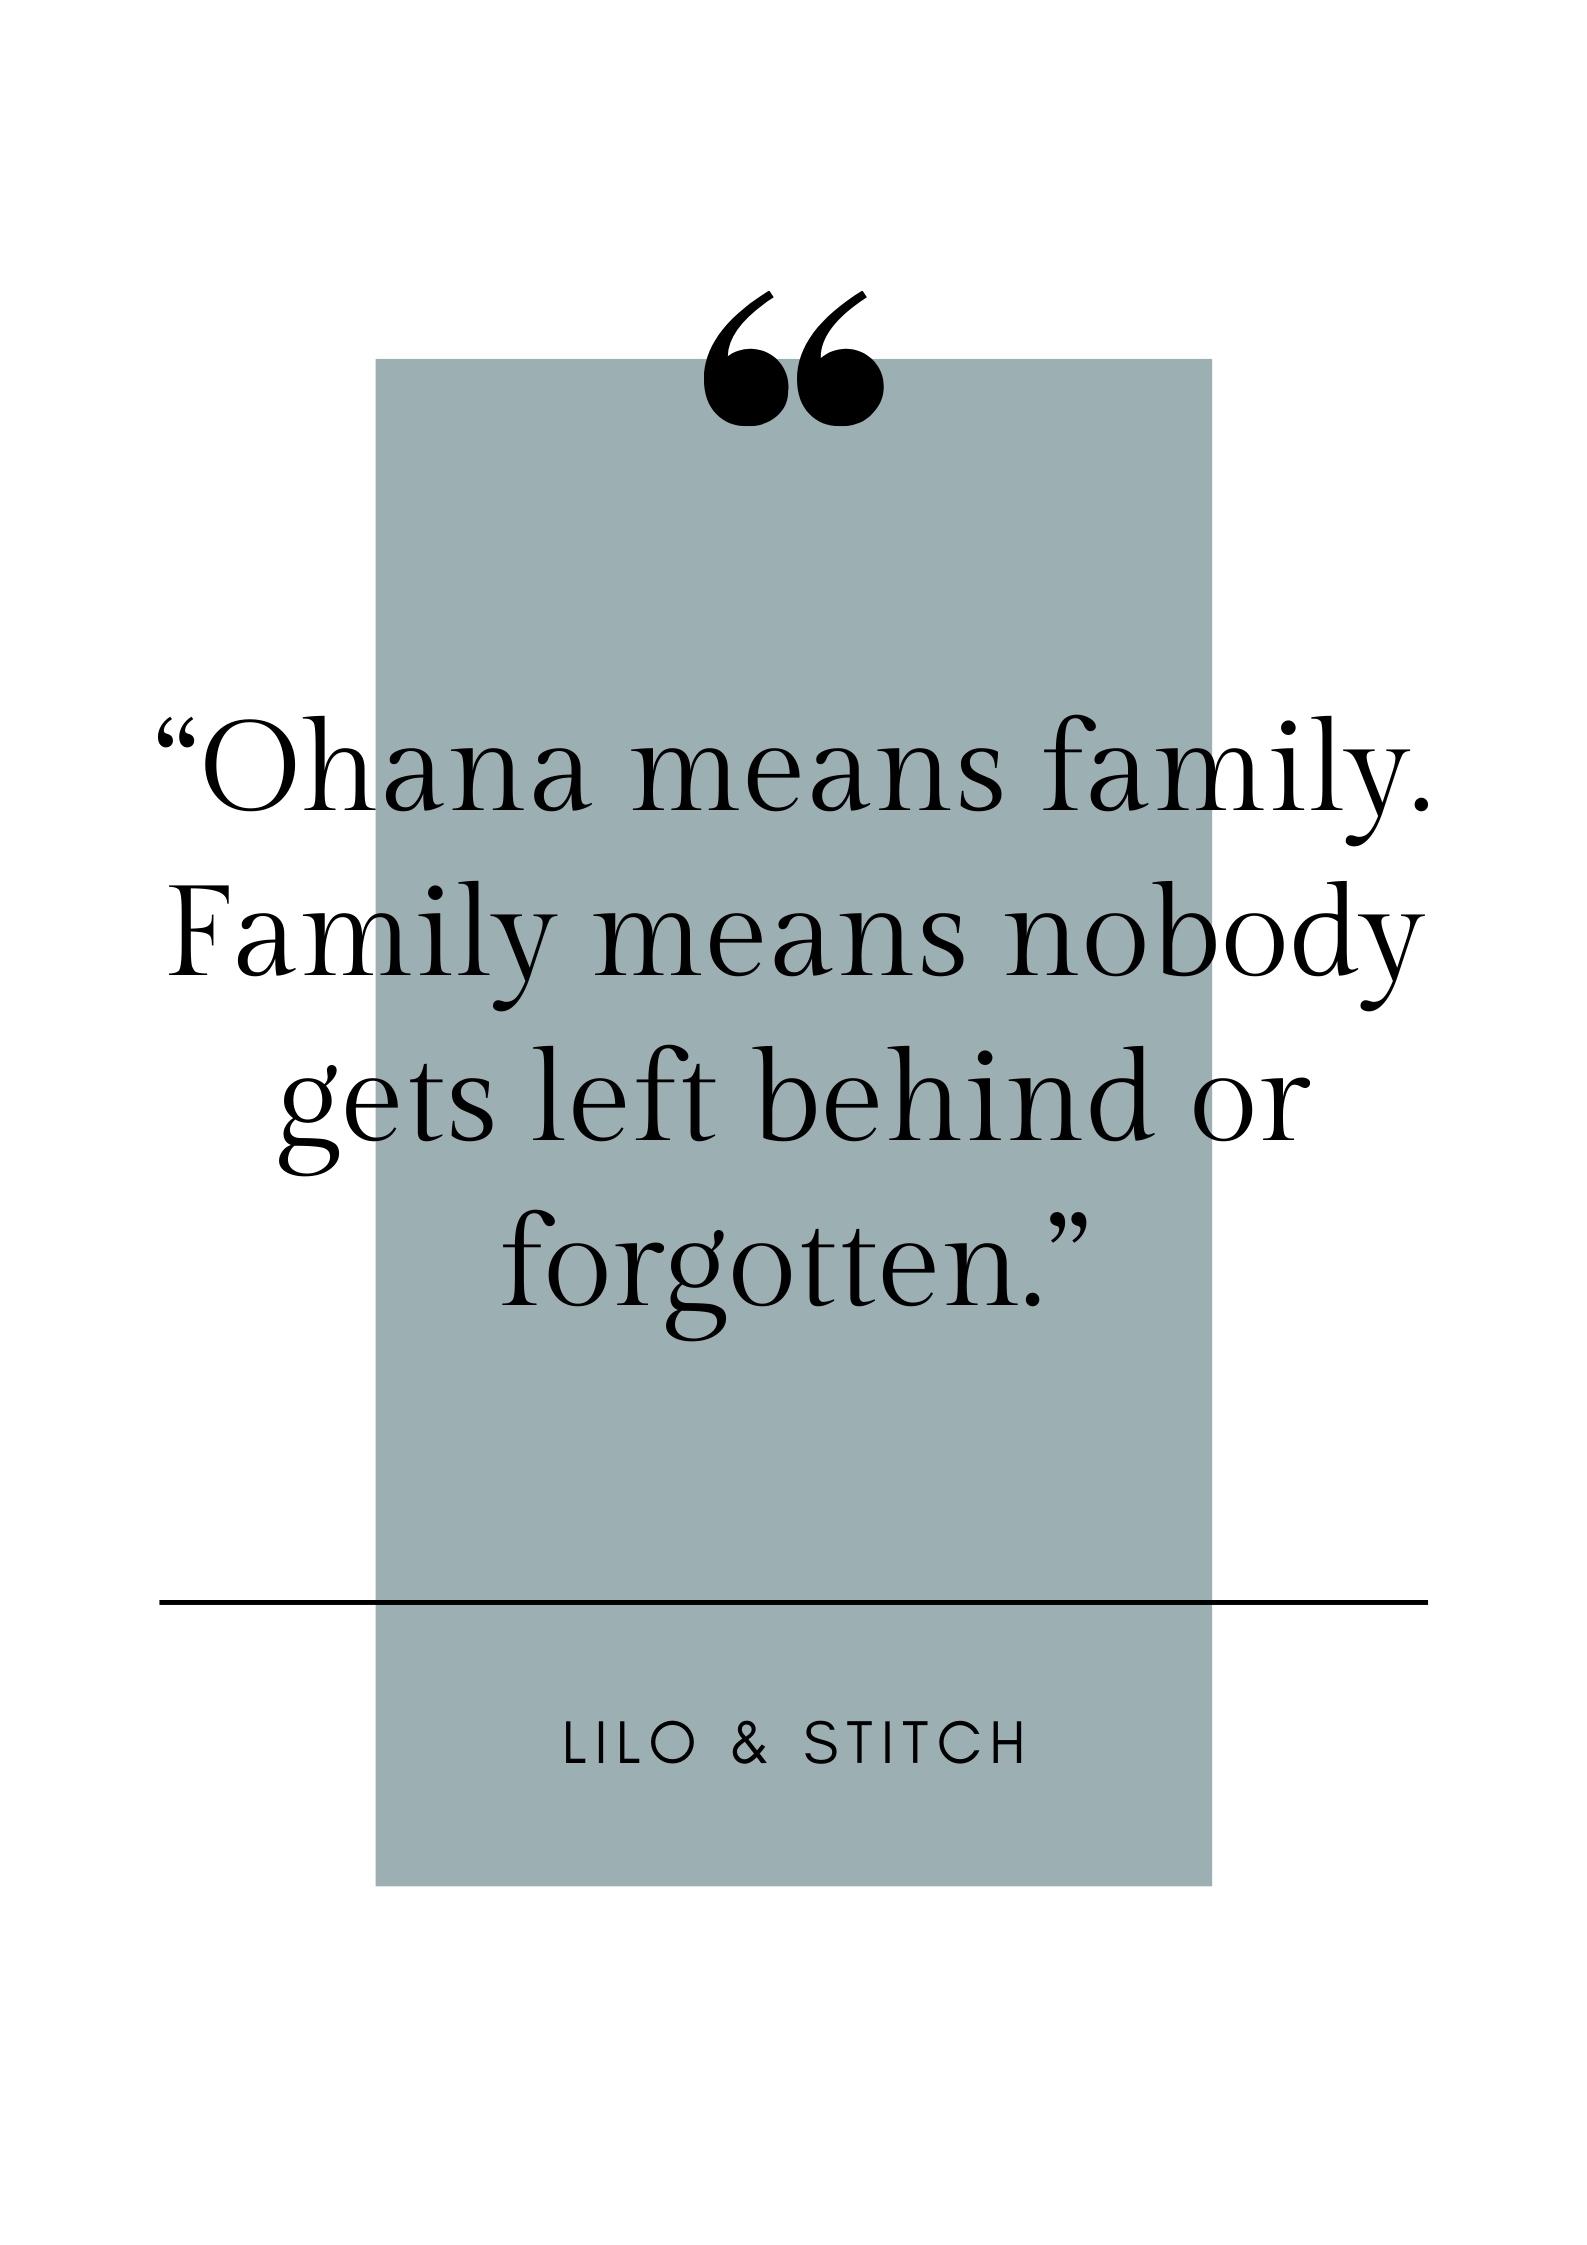 disney quote on family 